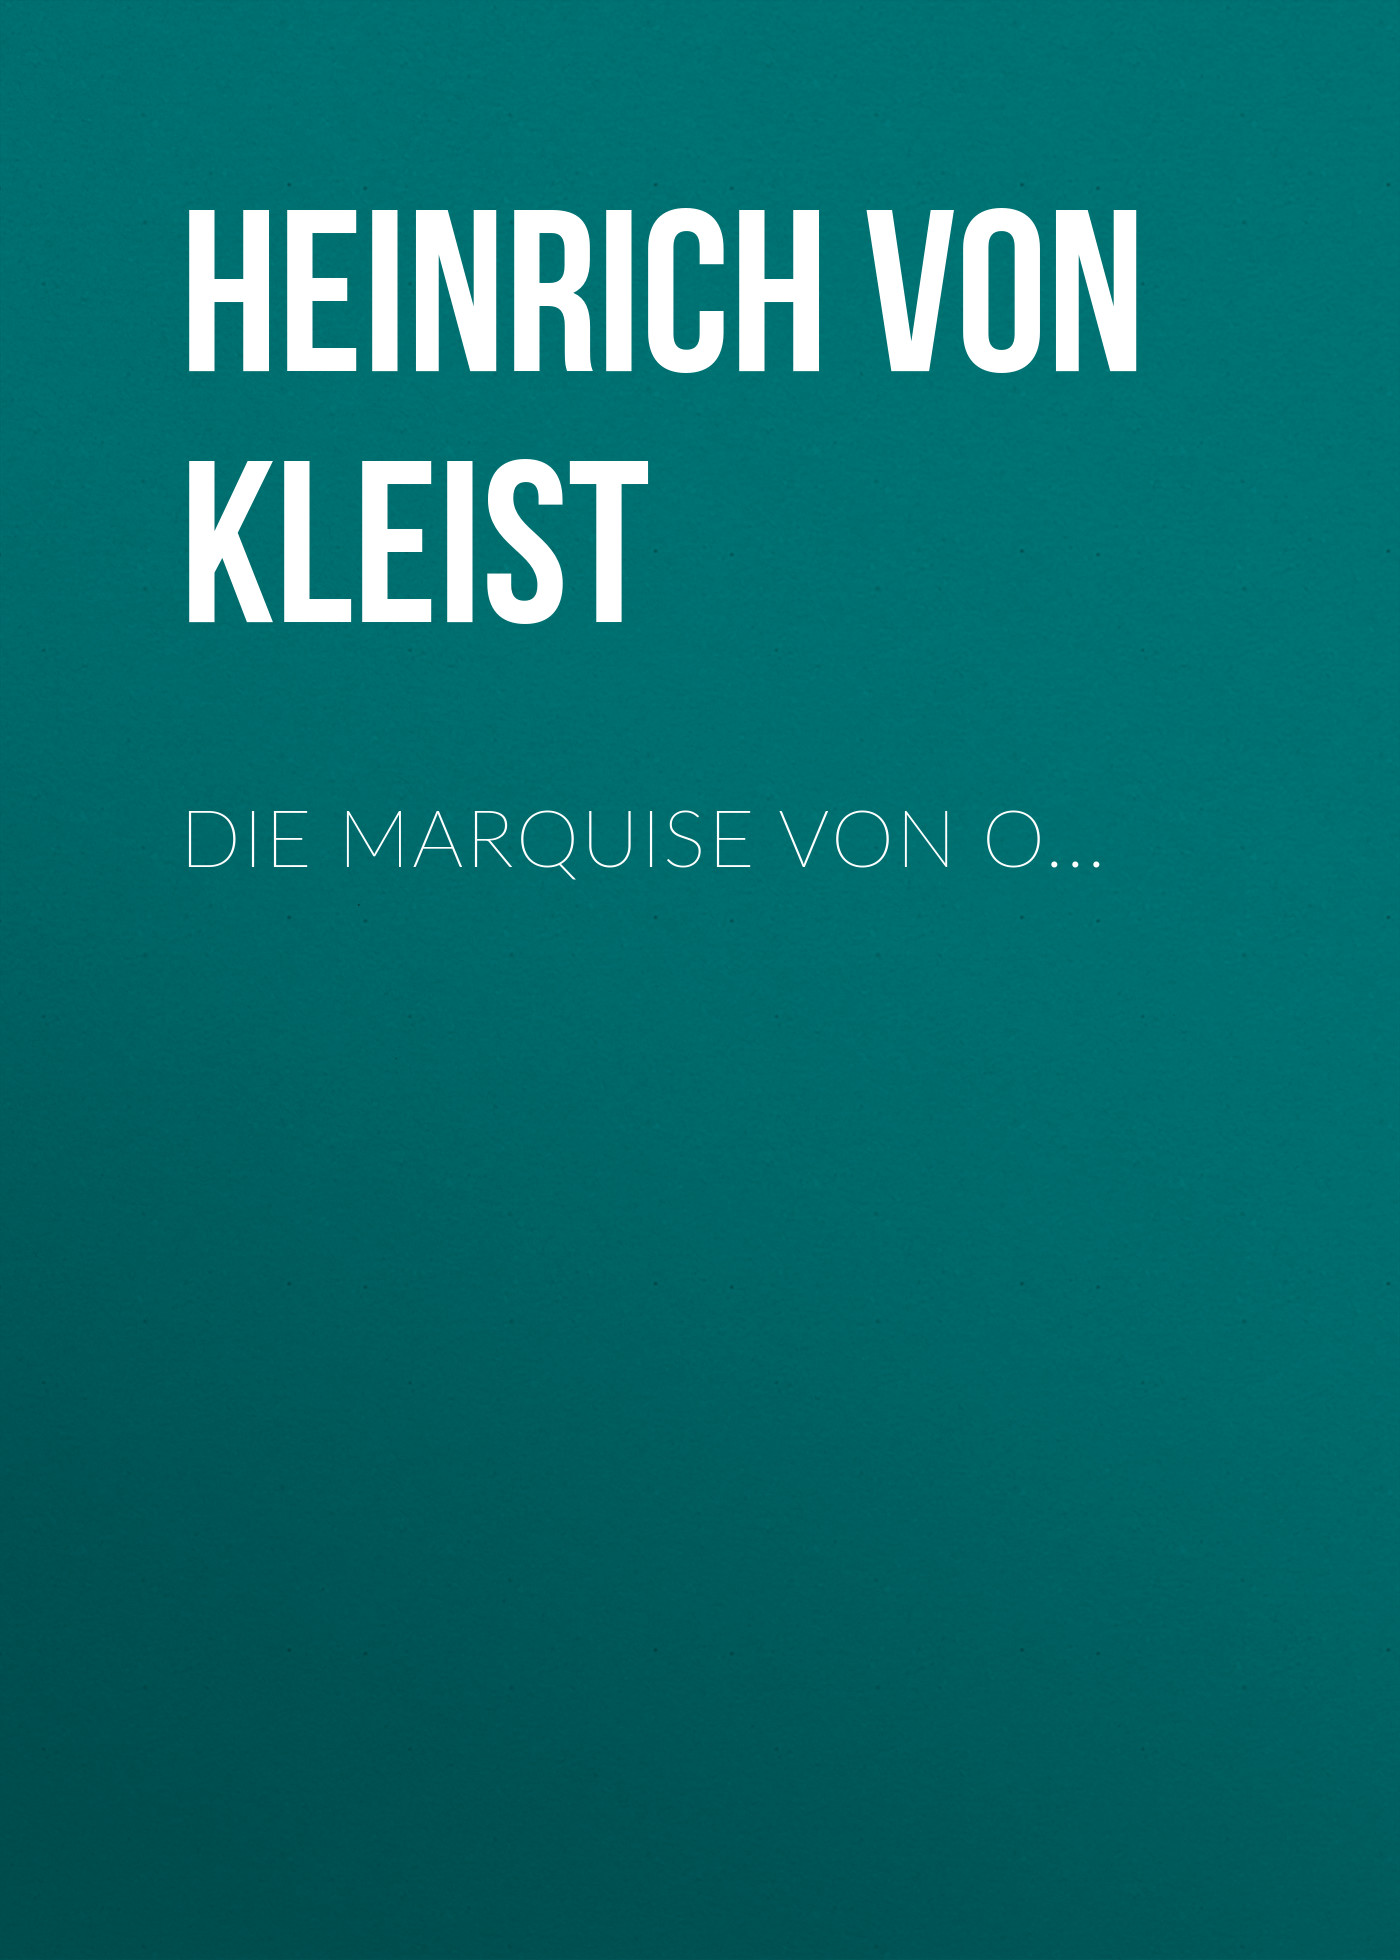 Heinrich von Kleist Die Marquise von O...